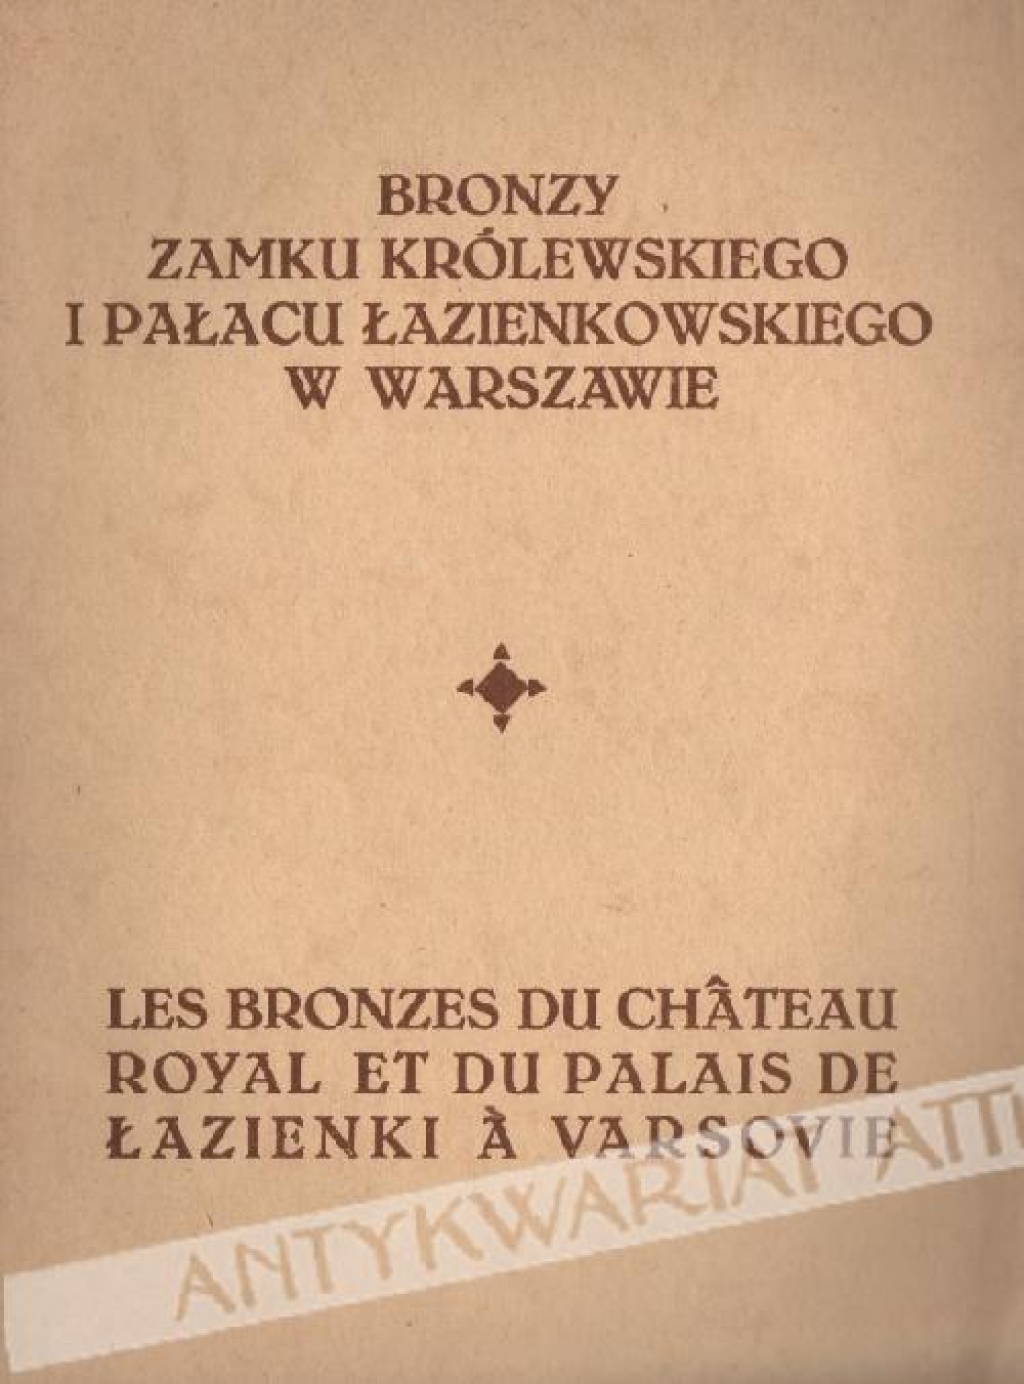 Bronzy Zamku Królewskiego i Pałacu Łazienkowskiego w Warszawie;
 Les Bronzes du Chateau Royal et du Palais de Łazienki a Varsovie
